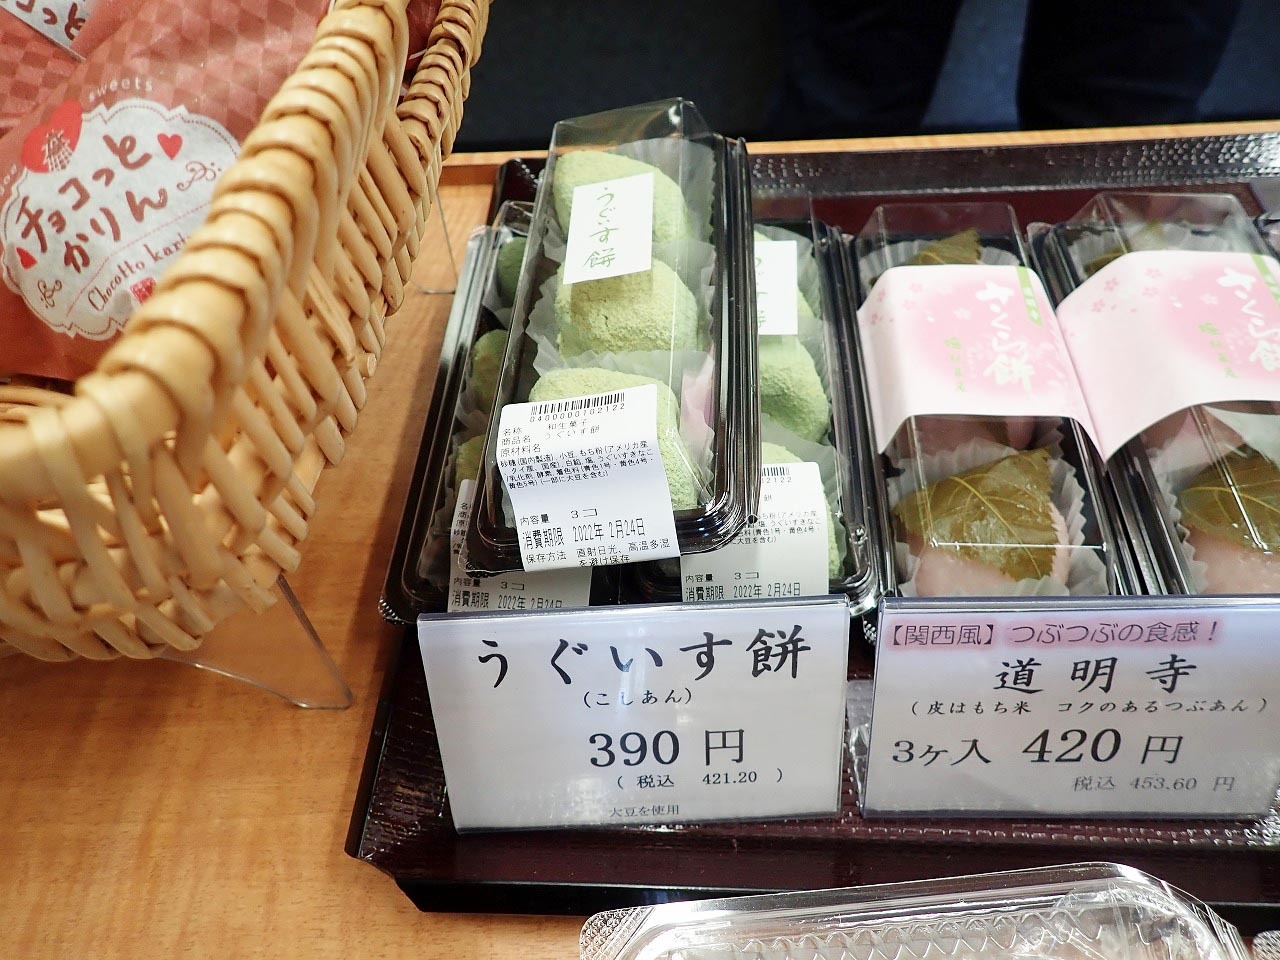 なるほど、素敵な特徴です。和菓子は見た目もきれいで、眺めているだけで幸せになります